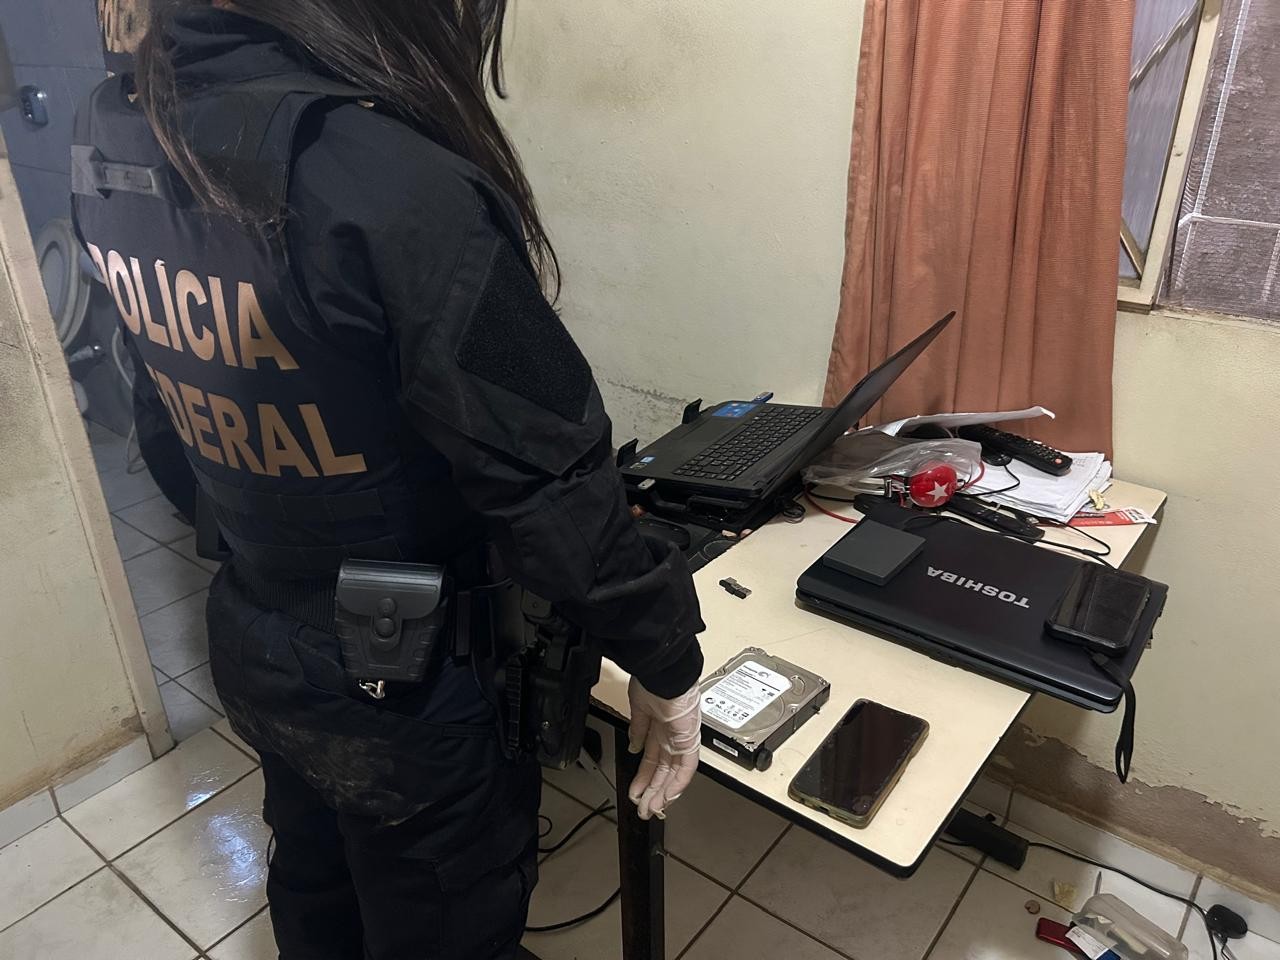 

Polícia Federal deflagra operação em combate a pornografia infantojuvenil 
no Leste de MG